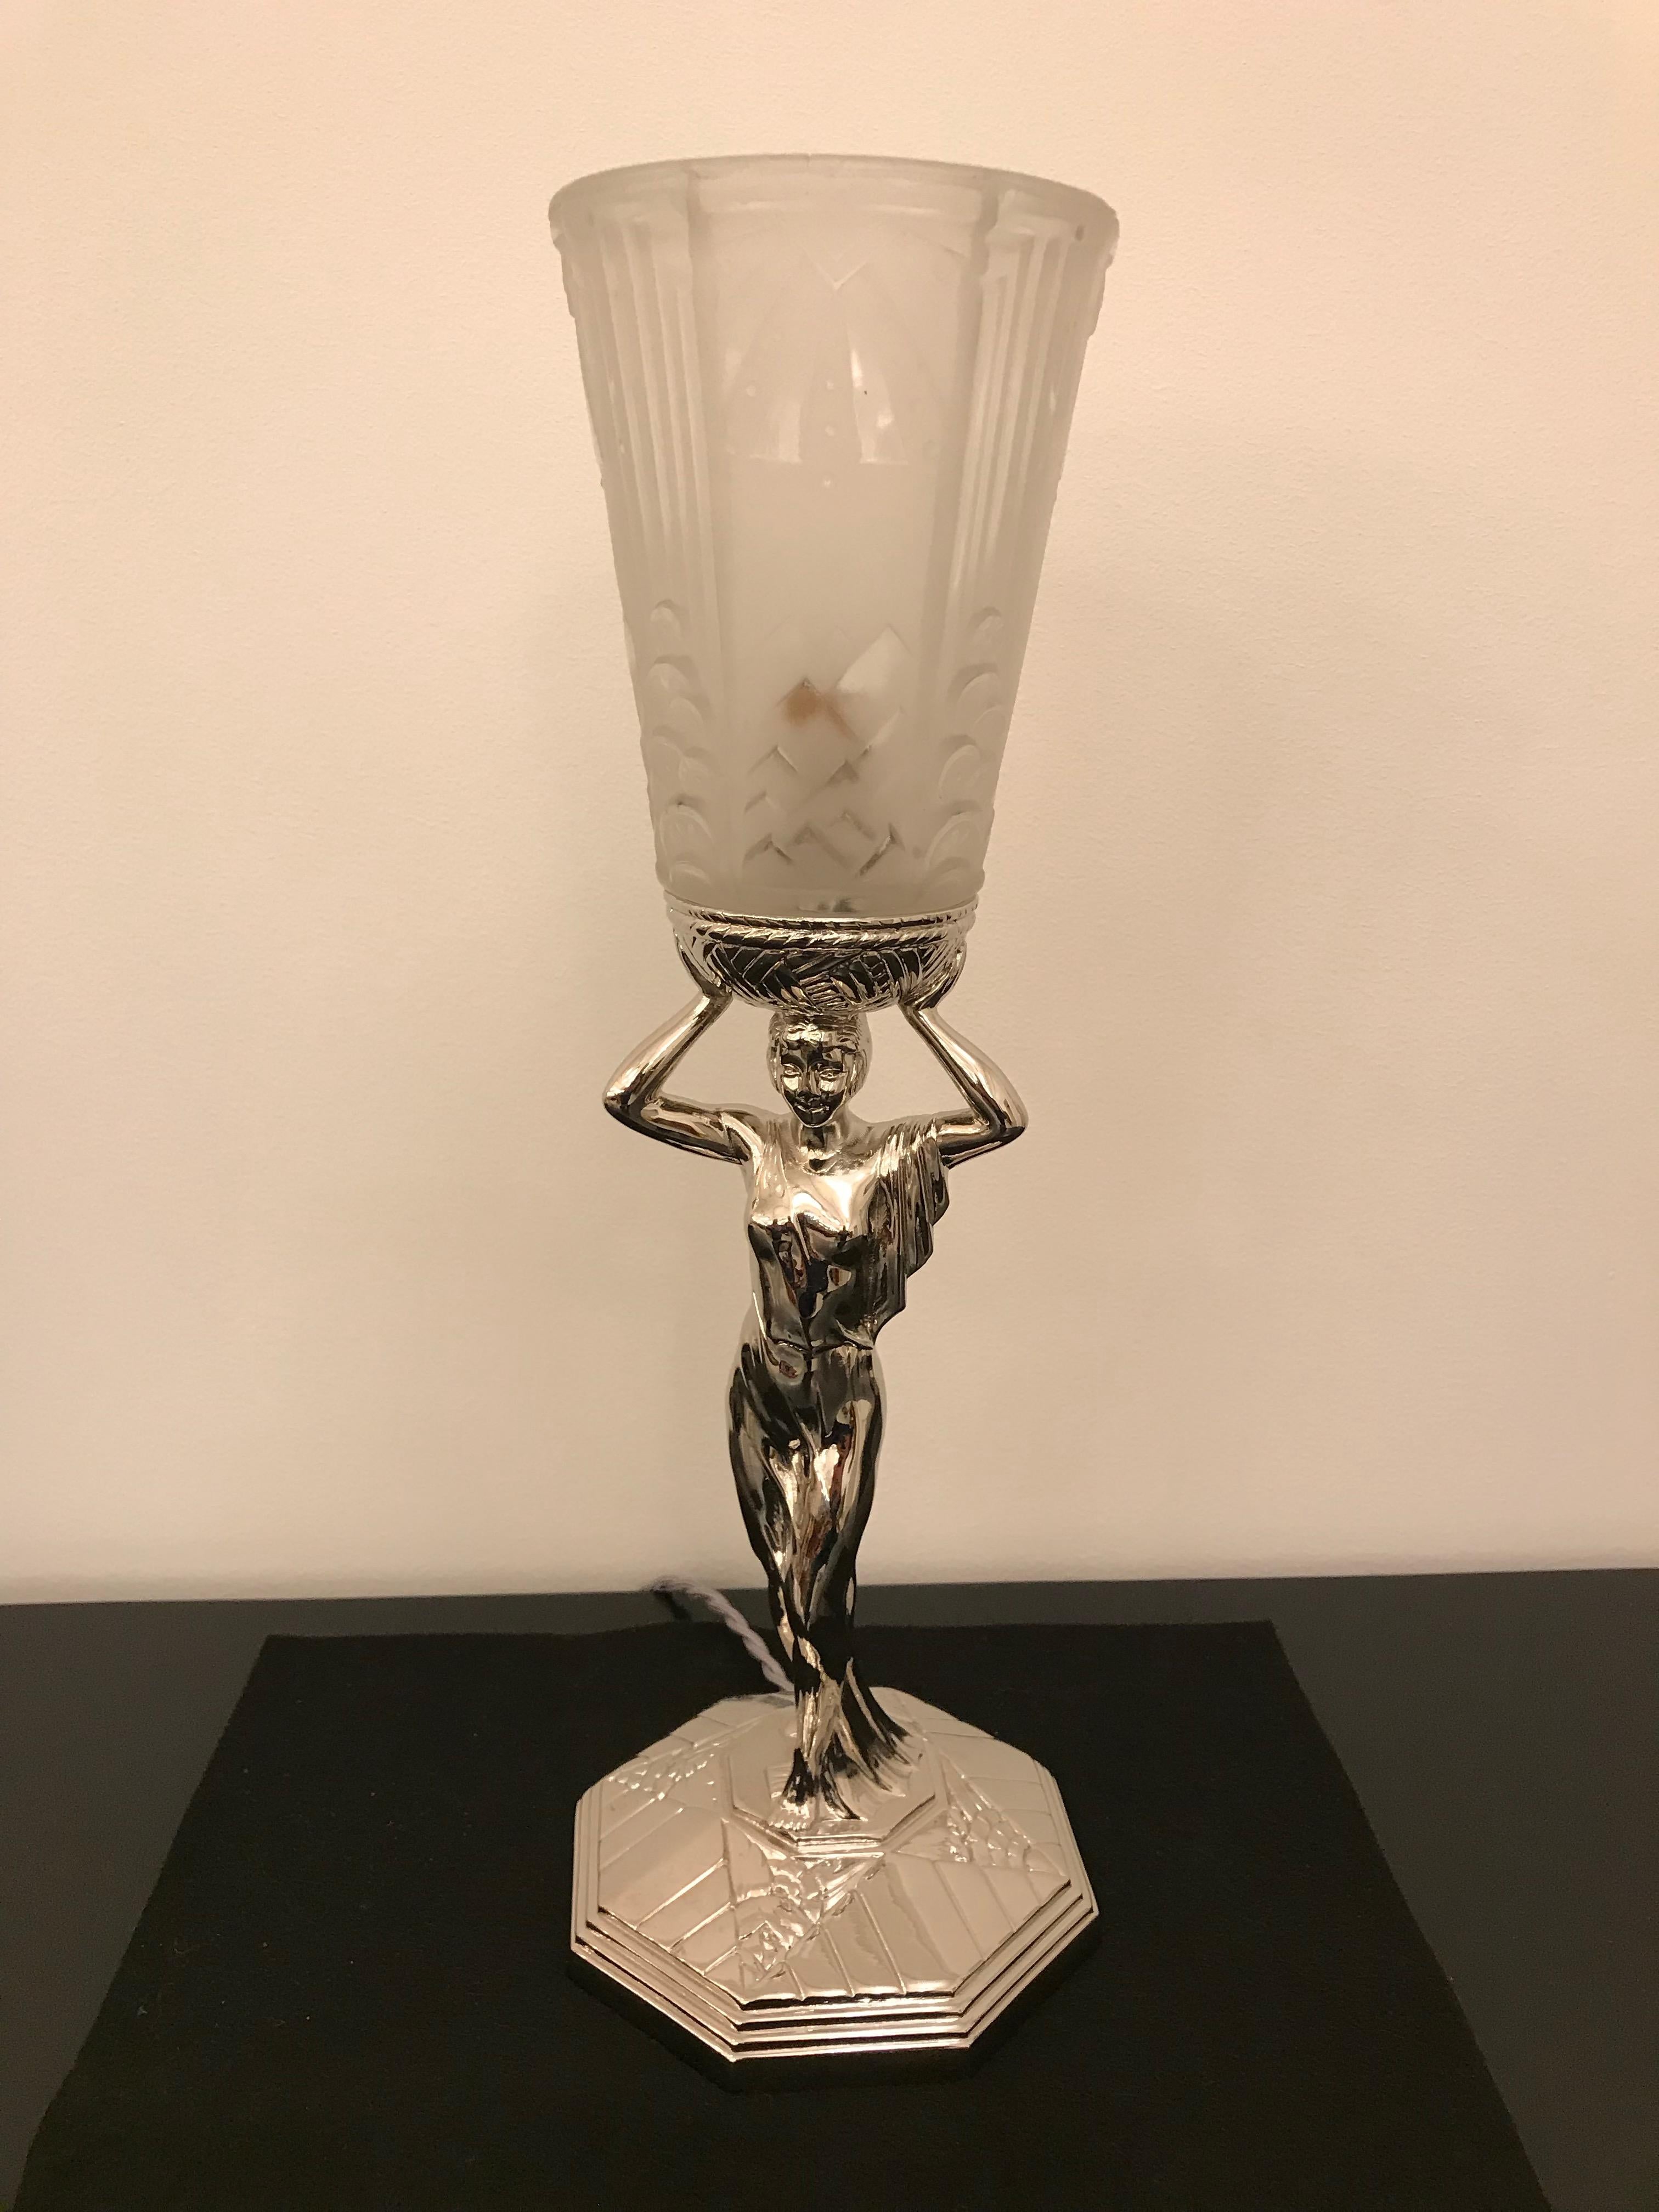 Schöne französische Art Deco Tischlampe. Schirm aus klarem Milchglas mit geometrischem Motiv, signiert von Muller Frères Luneville. Gehalten auf einem vernickelten weiblichen dekorativen Deco-Design Lampenfuß. Wurde für den amerikanischen Gebrauch